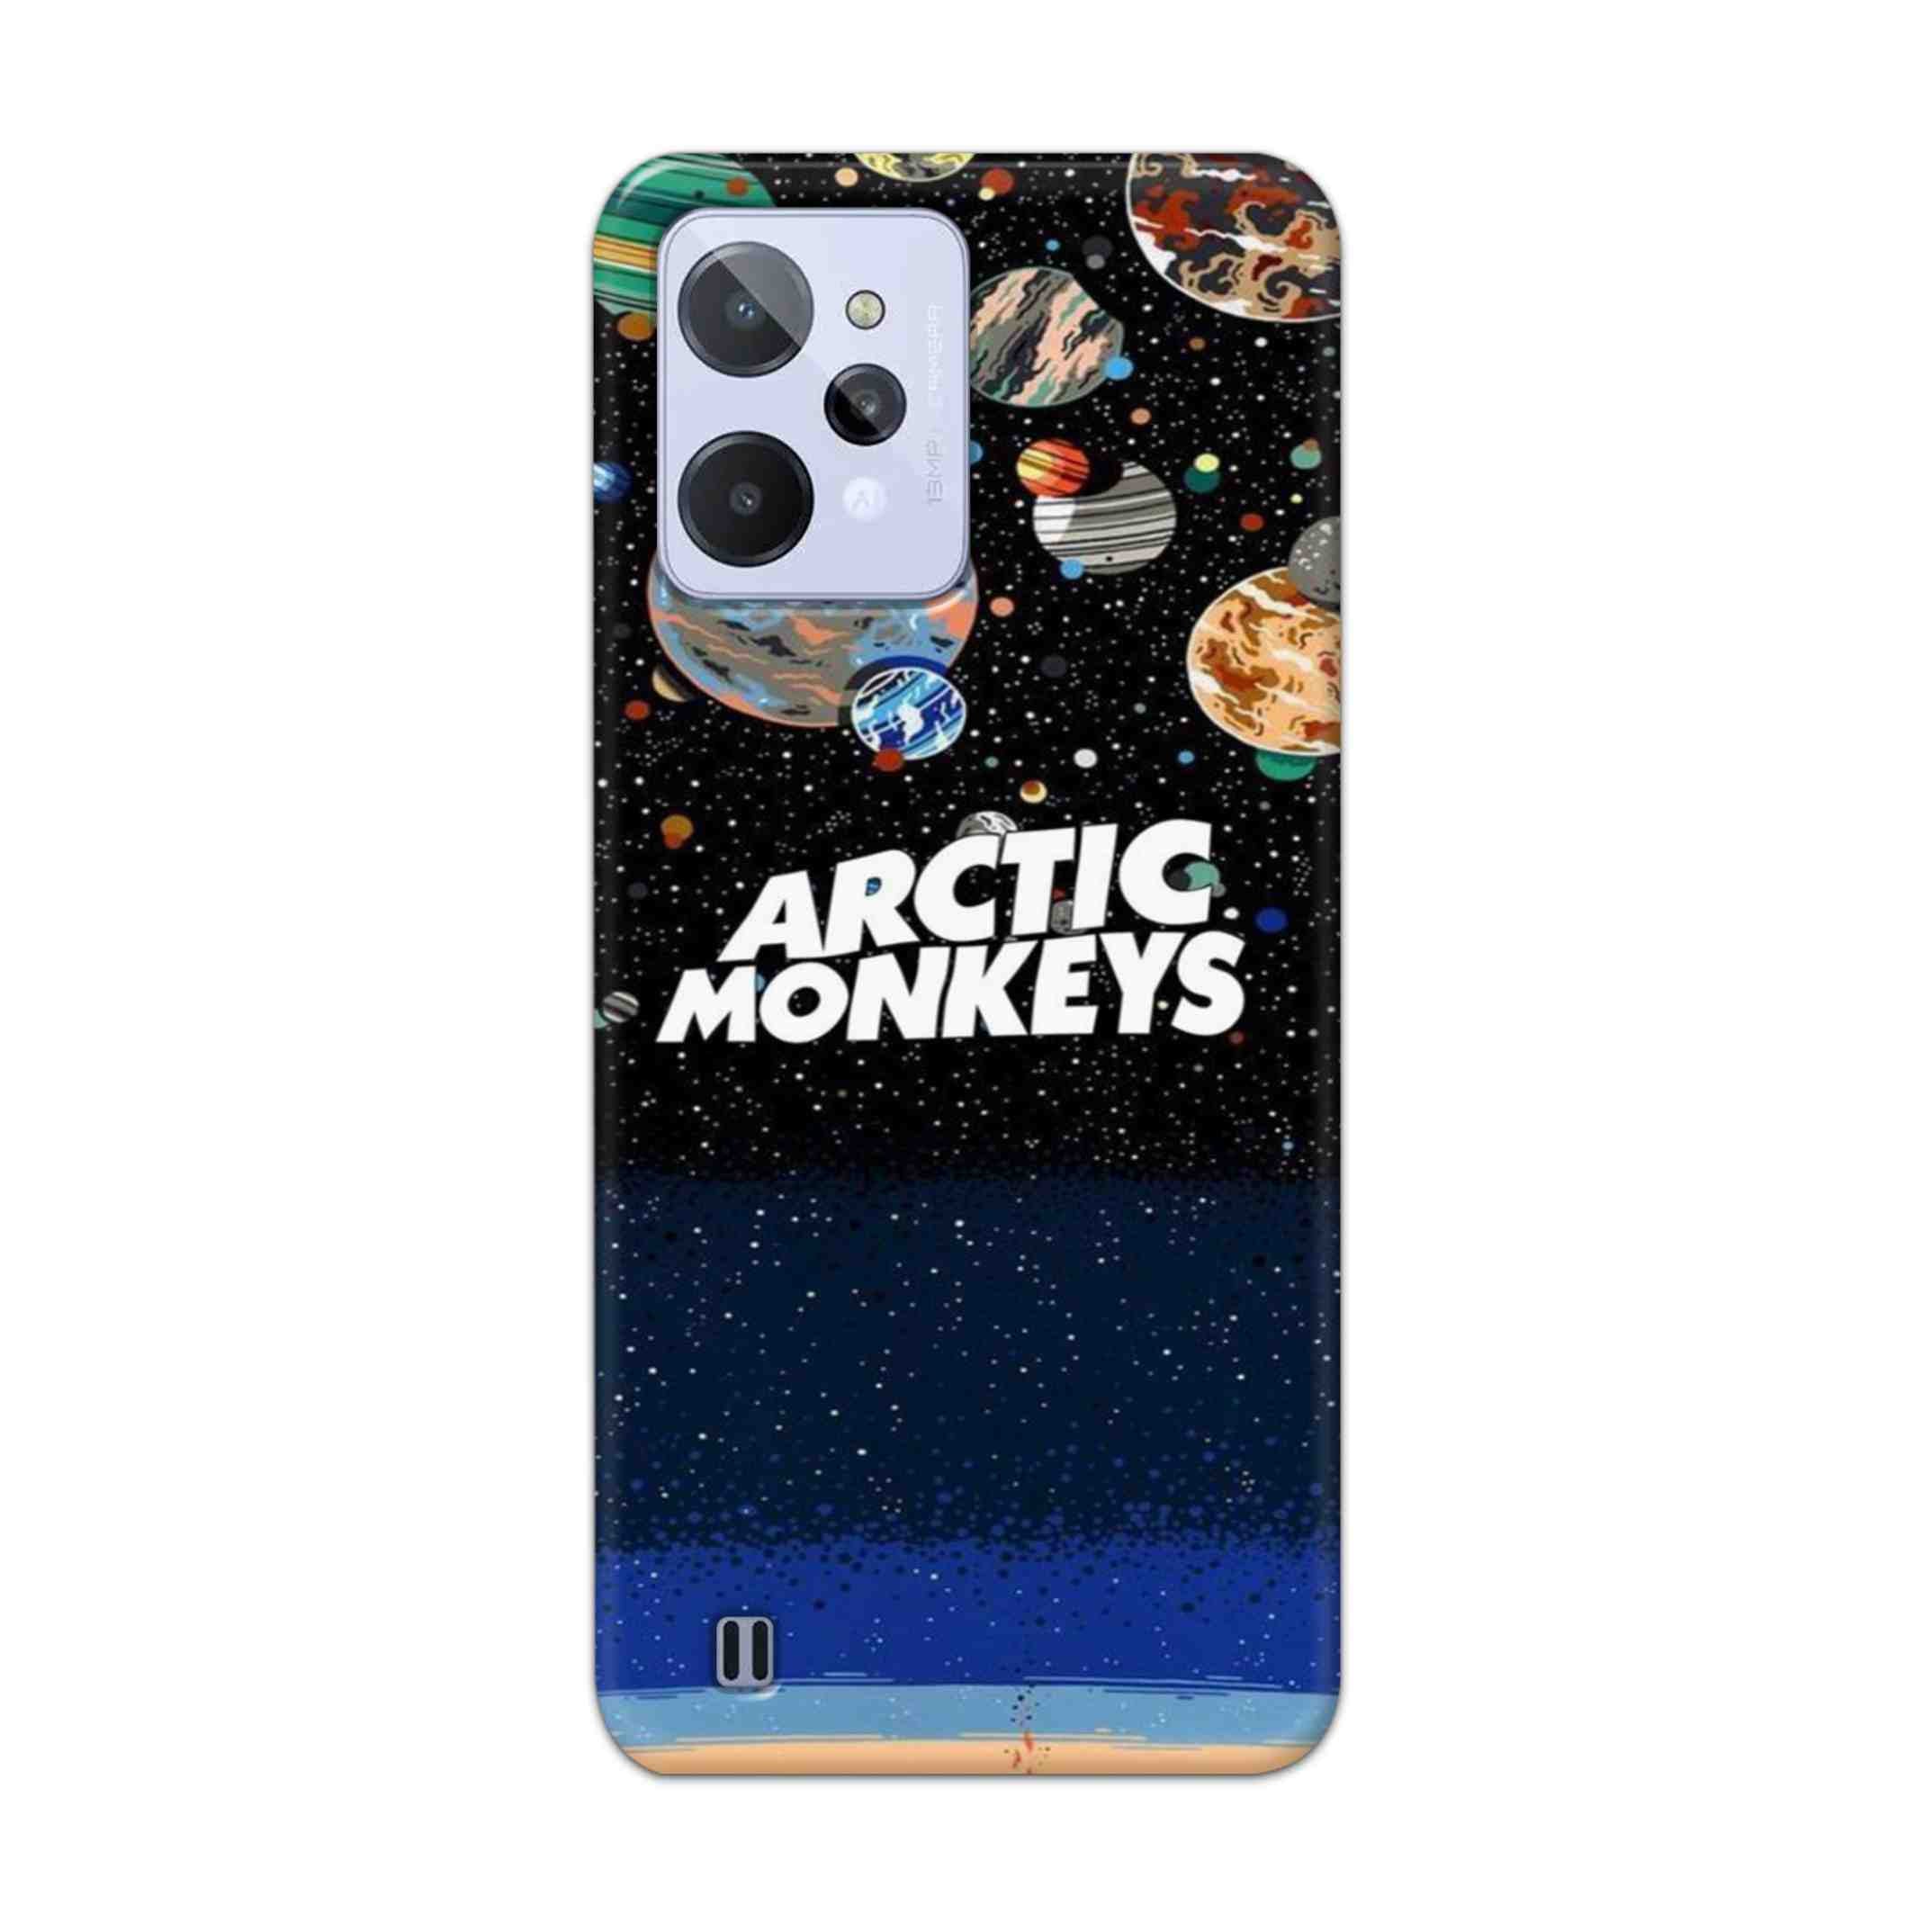 Buy Artic Monkeys Hard Back Mobile Phone Case Cover For Realme C31 Online